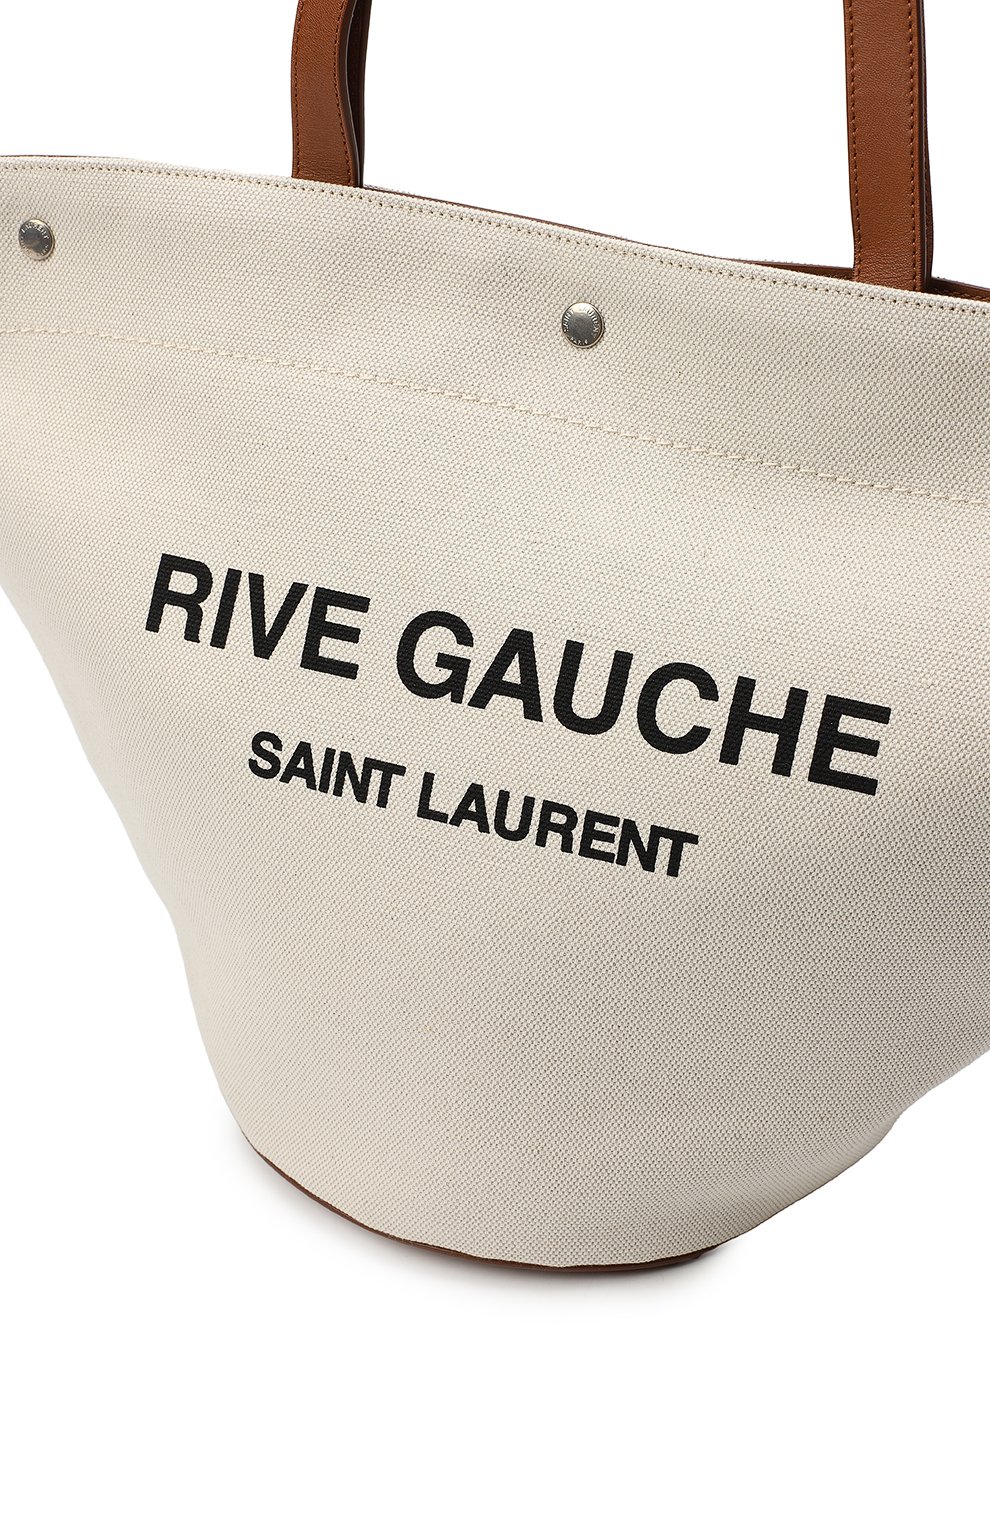 Сумка-тоут Rive Gauche | Saint Laurent | Бежевый - 6